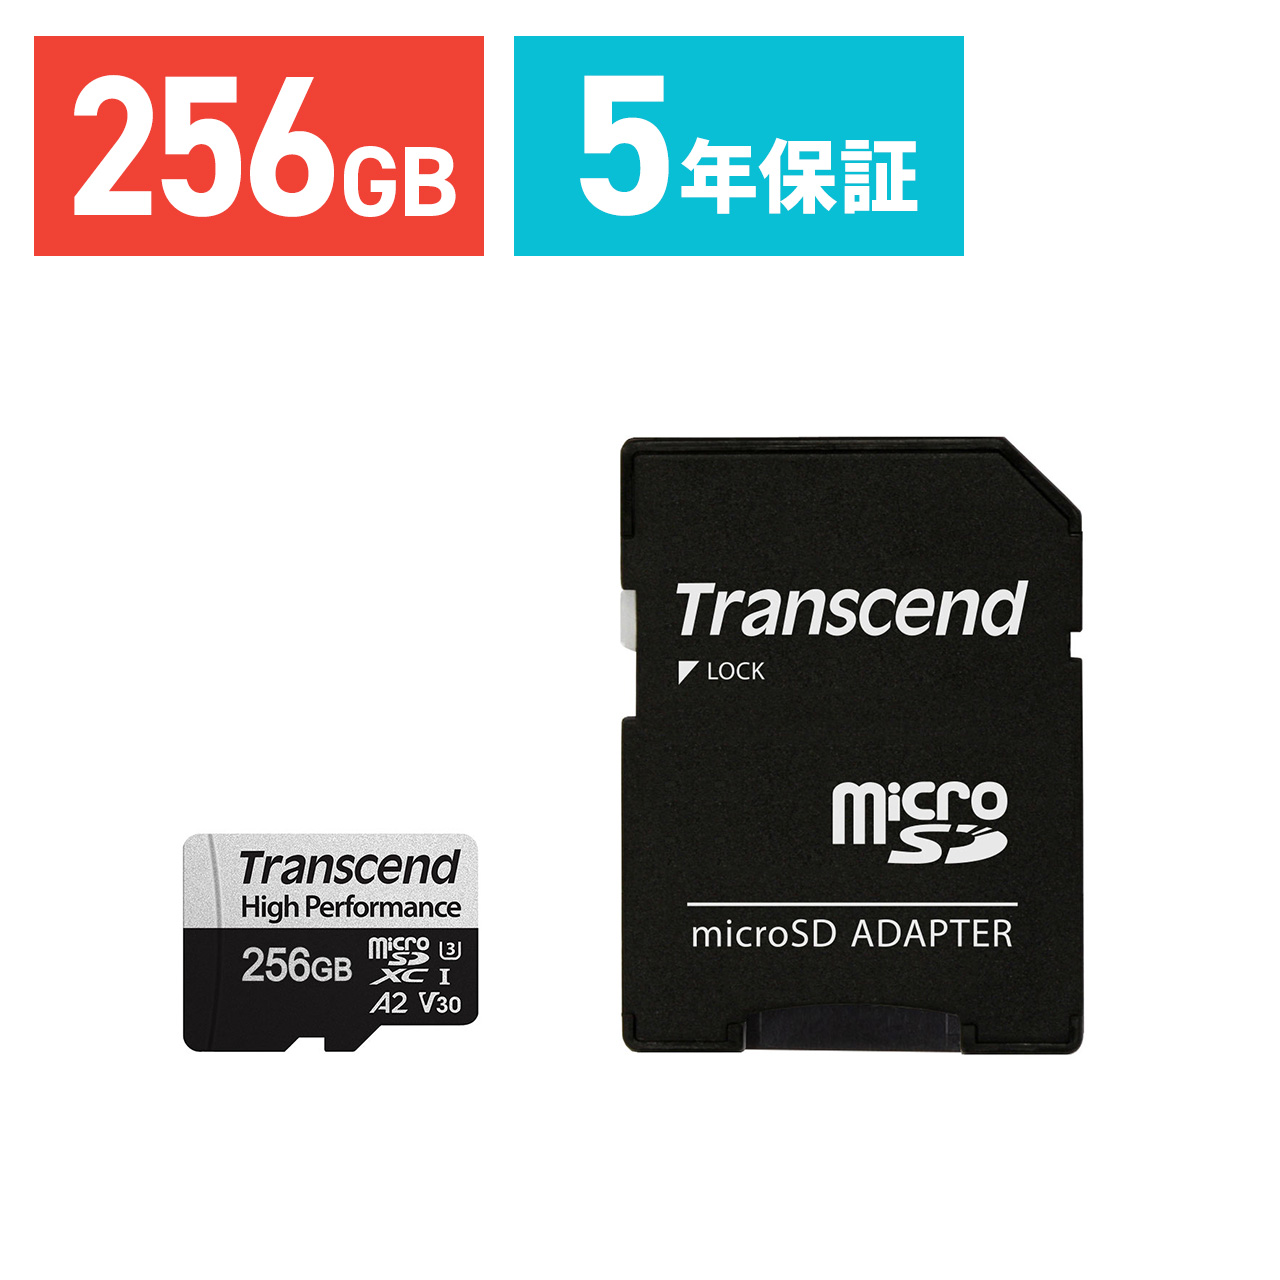 microSDXCJ[h 256GB UHS-I U3 V30 A2 SDϊA_v^t Nintendo SwitchΉ Transcend TS256GUSD330S